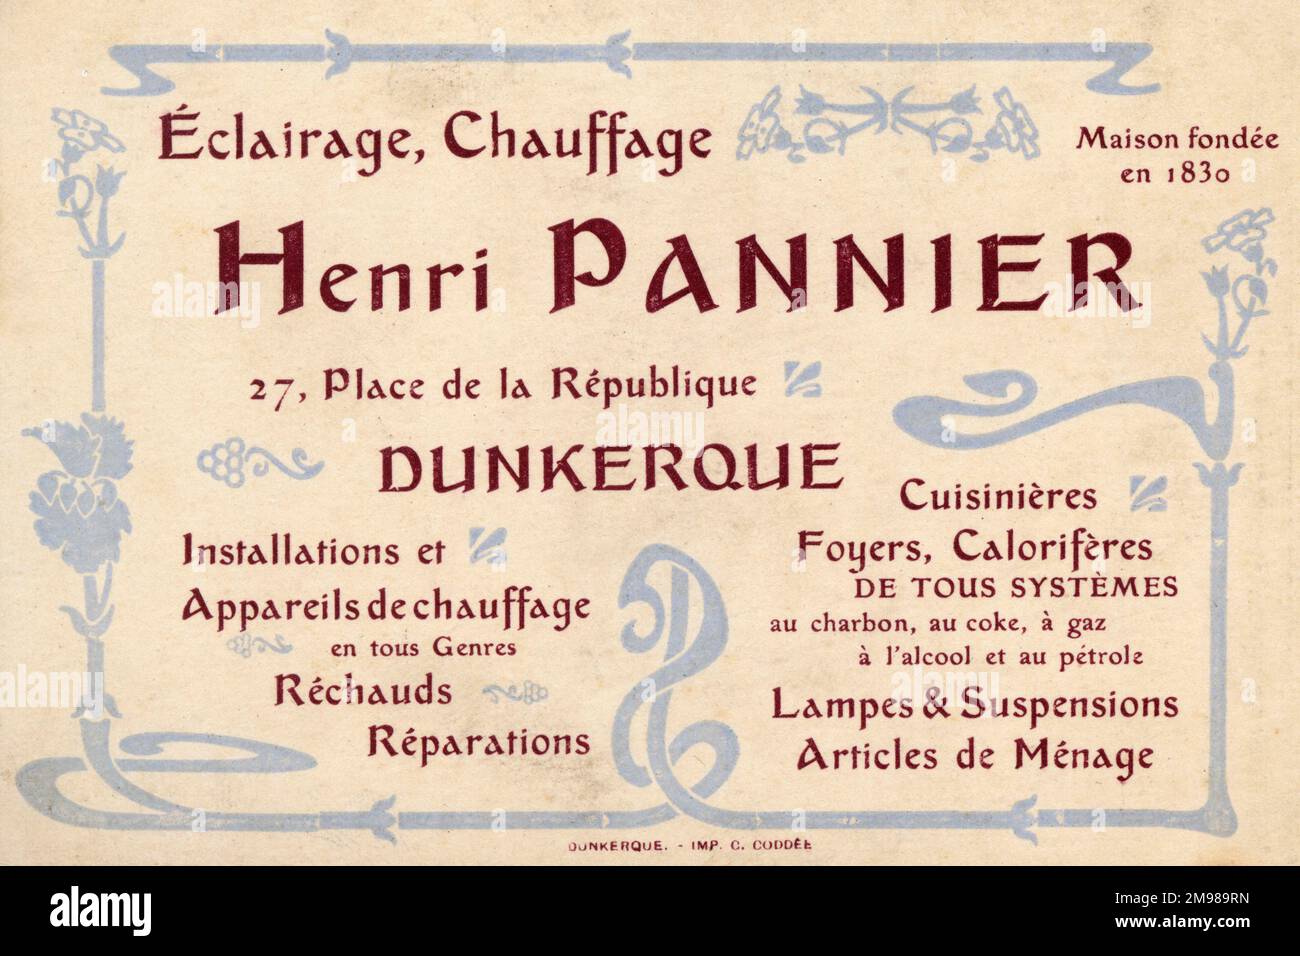 Carta pubblicitaria, Henri Pannier, Place de la Republique, Dunkirk, Francia, che offre prodotti e servizi di illuminazione e riscaldamento. Foto Stock